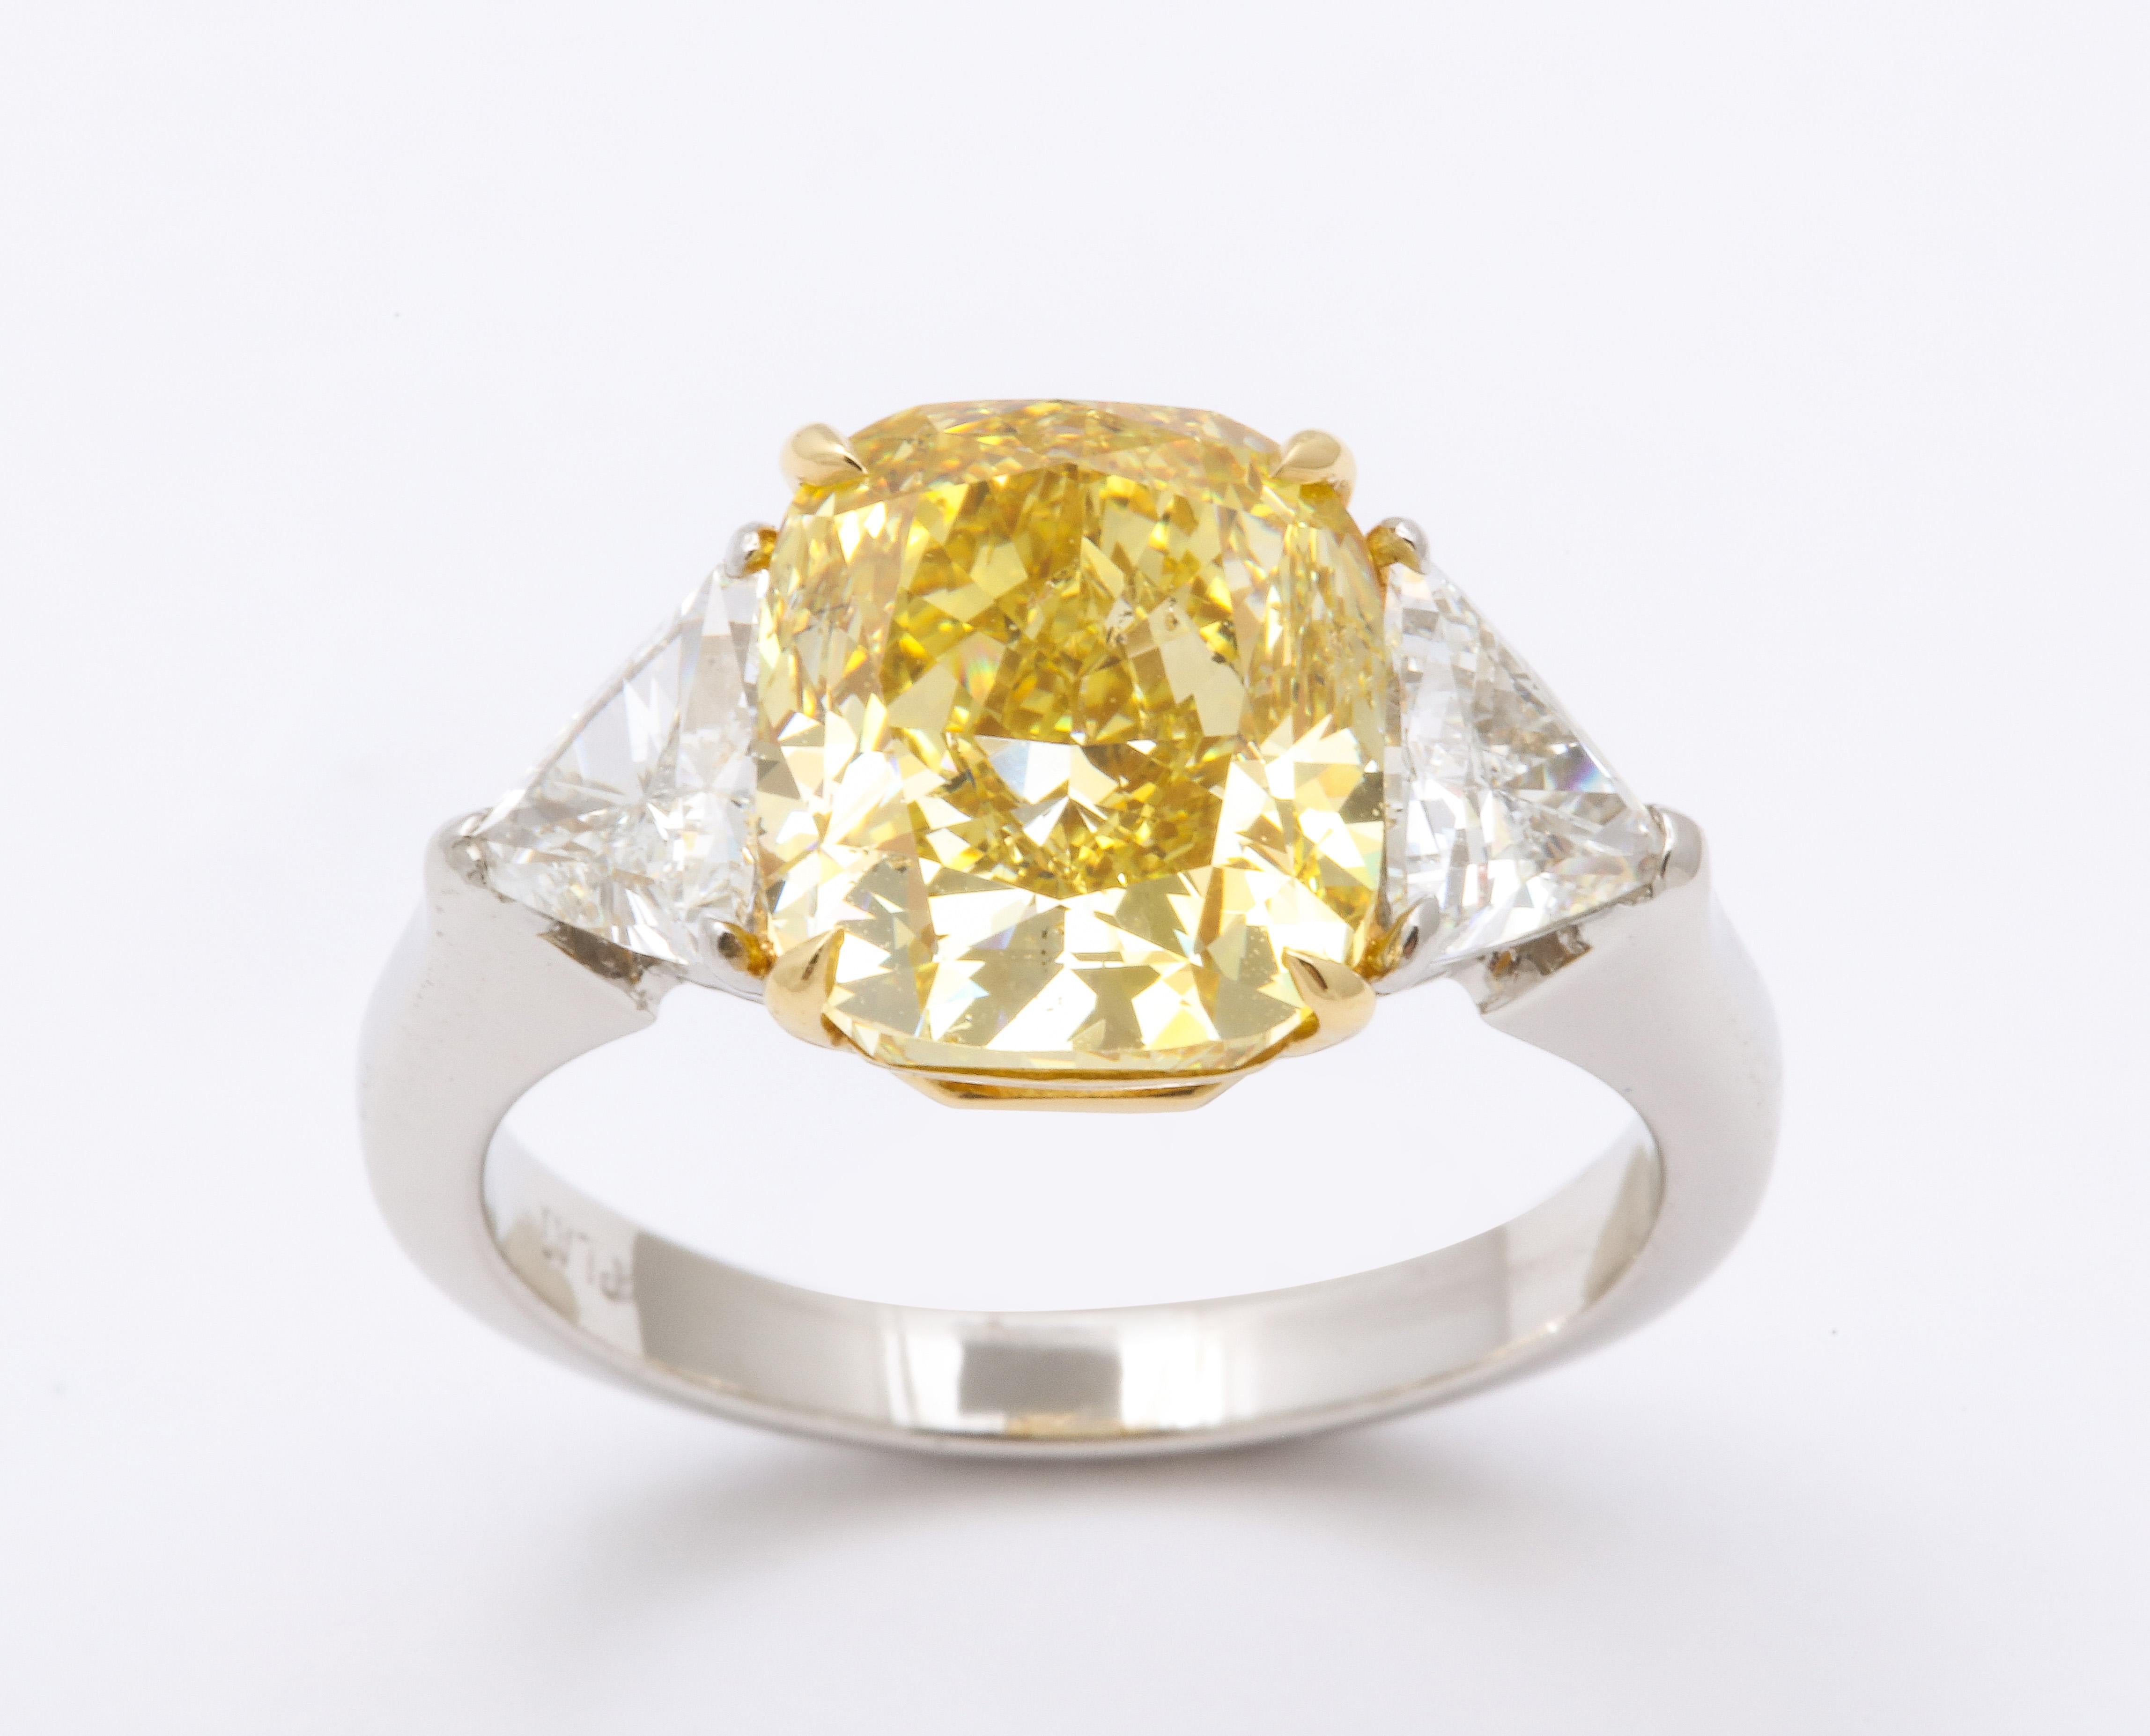 4 carat yellow diamond price